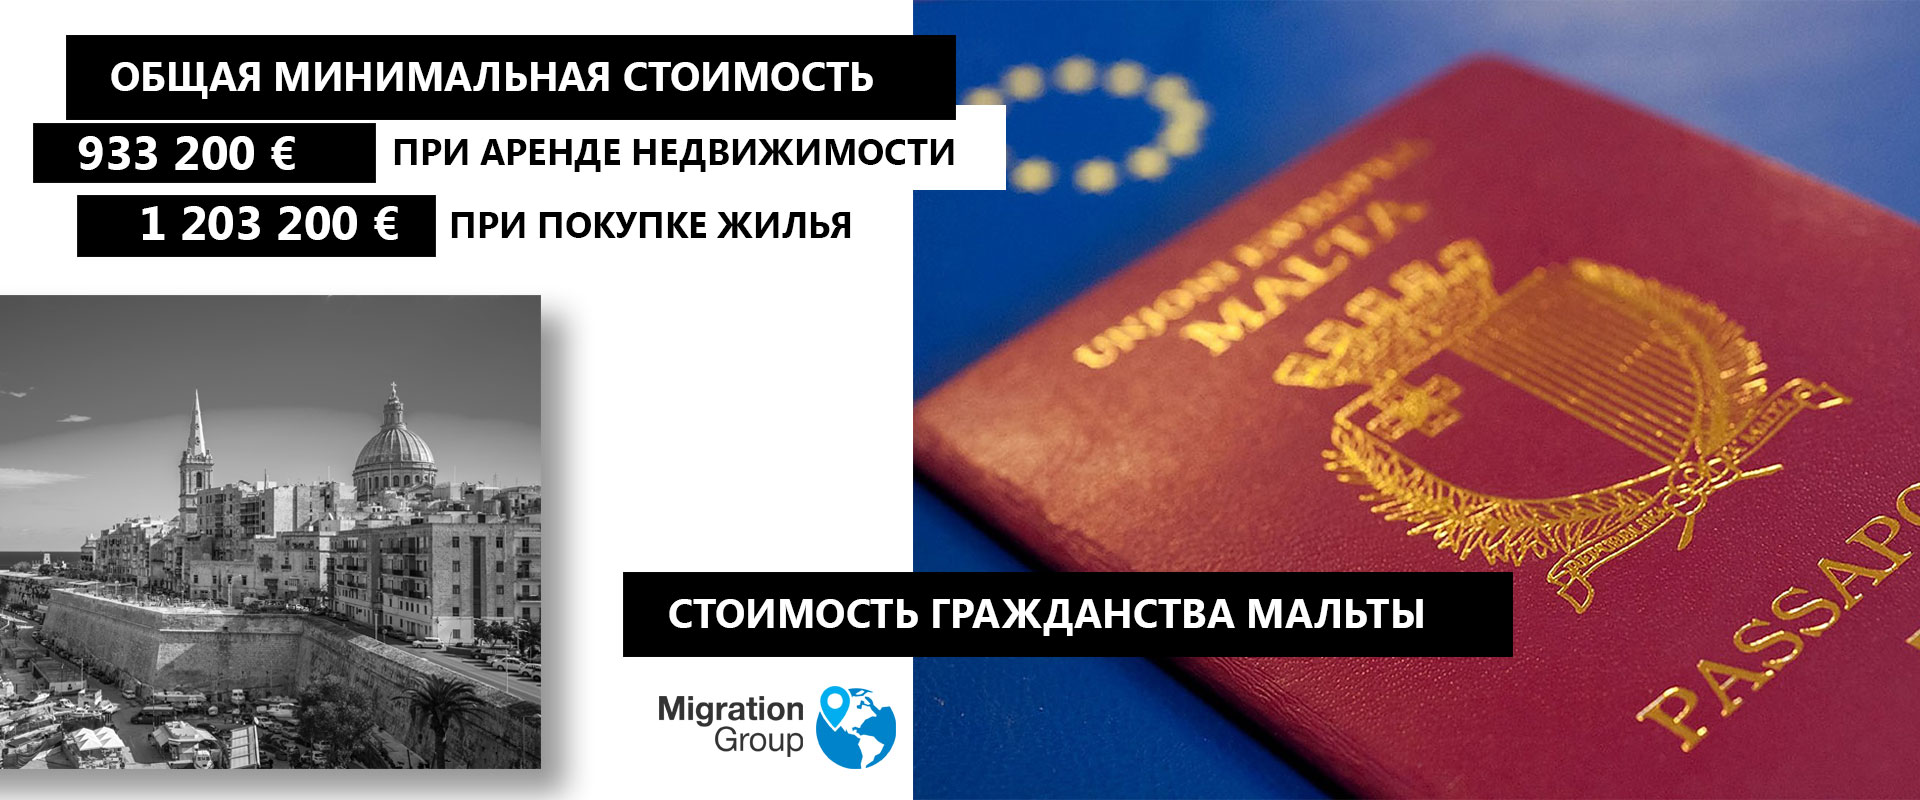 Иммиграция в черногорию из россии: что нужно для выезда на пмж, как переехать, в том числе из соседних стран